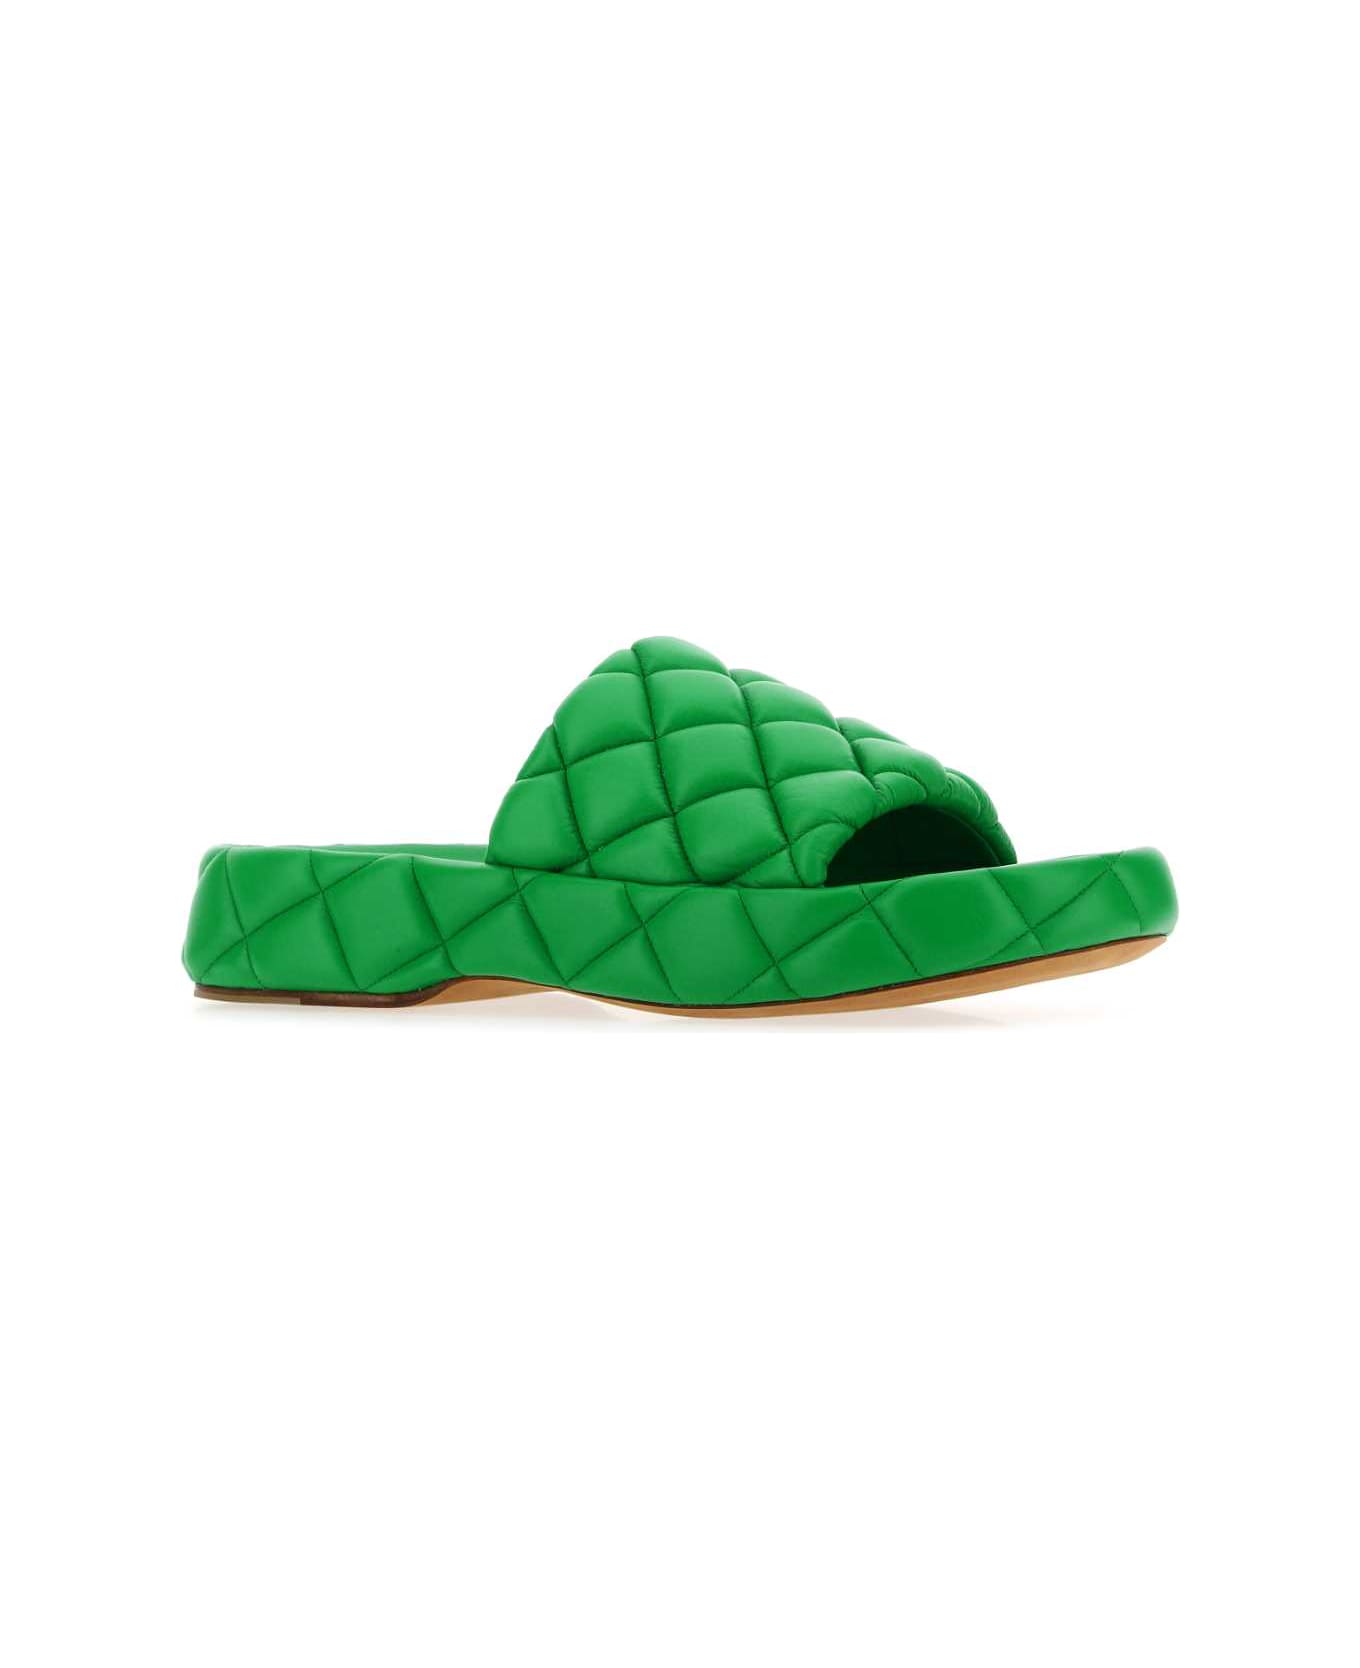 Bottega Veneta Grass Green Leather Padded Sandals - 3708